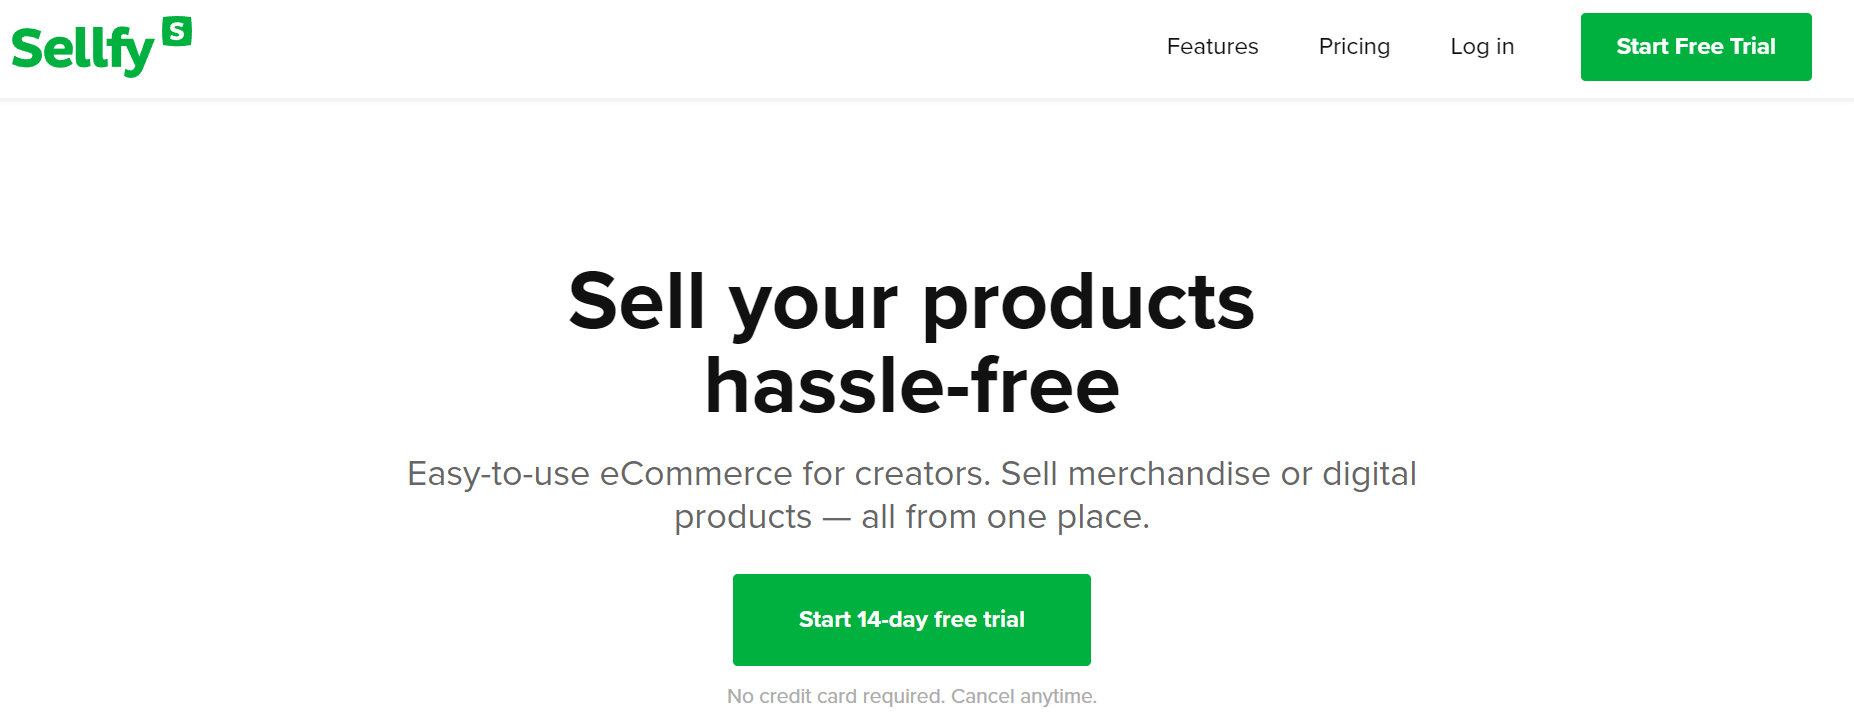 Sellfy Alternative to Shopify